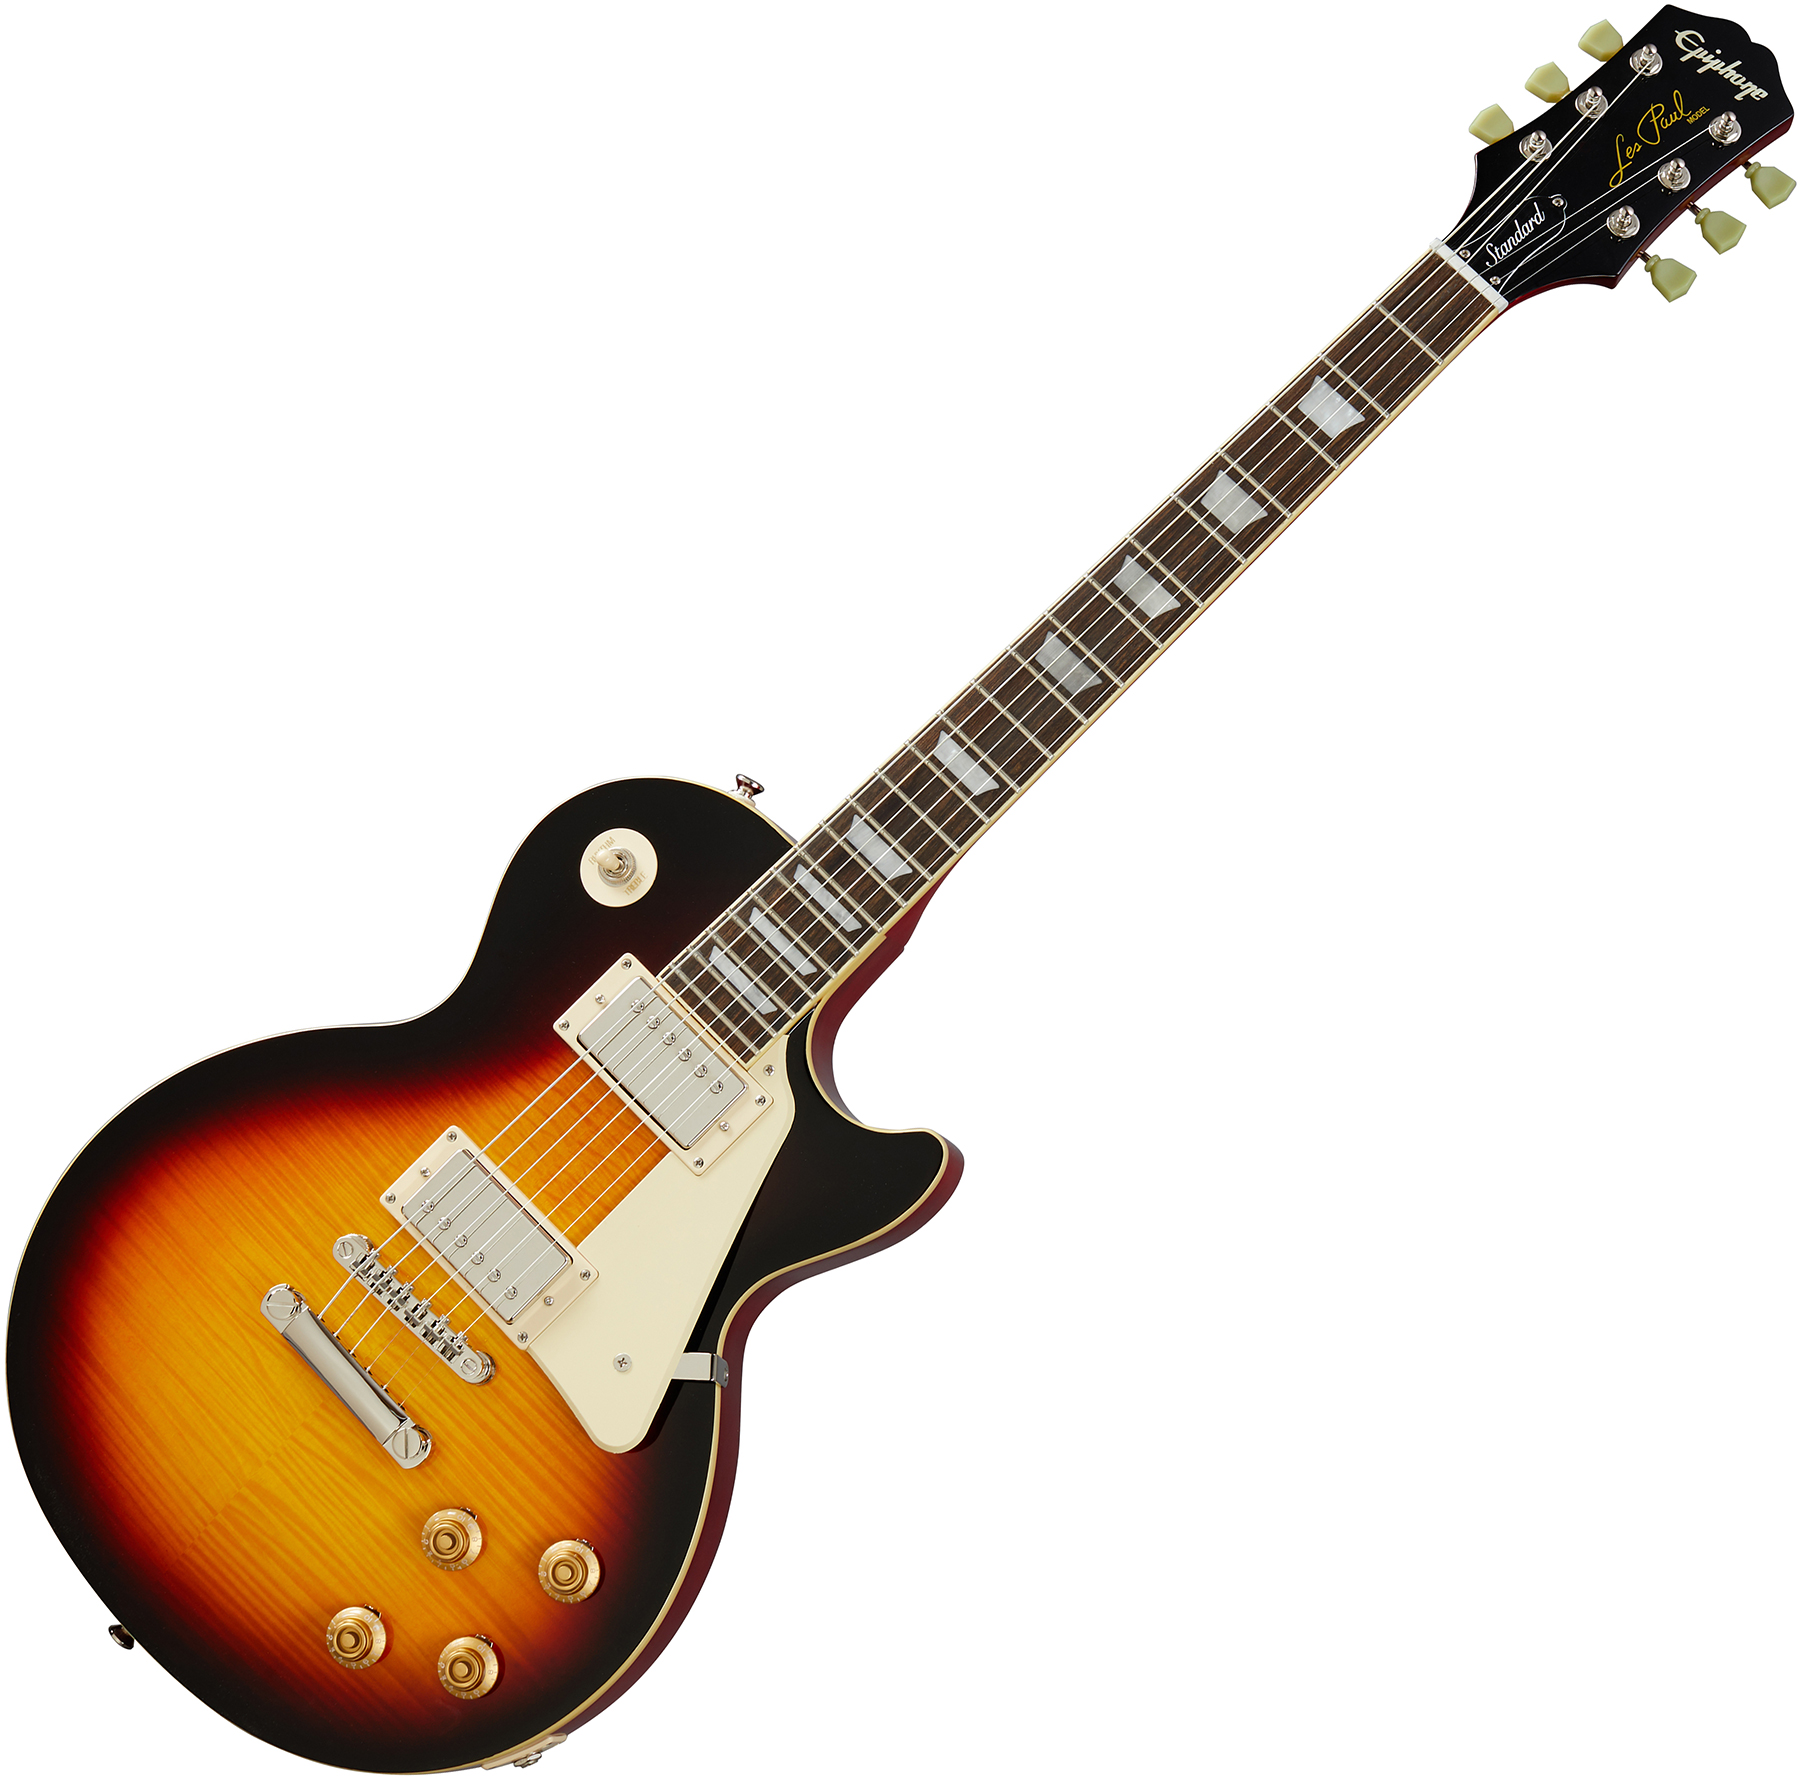 Epiphone Les Paul Standard 50s 2h Ht Rw - Vintage Sunburst - Single cut electric guitar - Variation 1